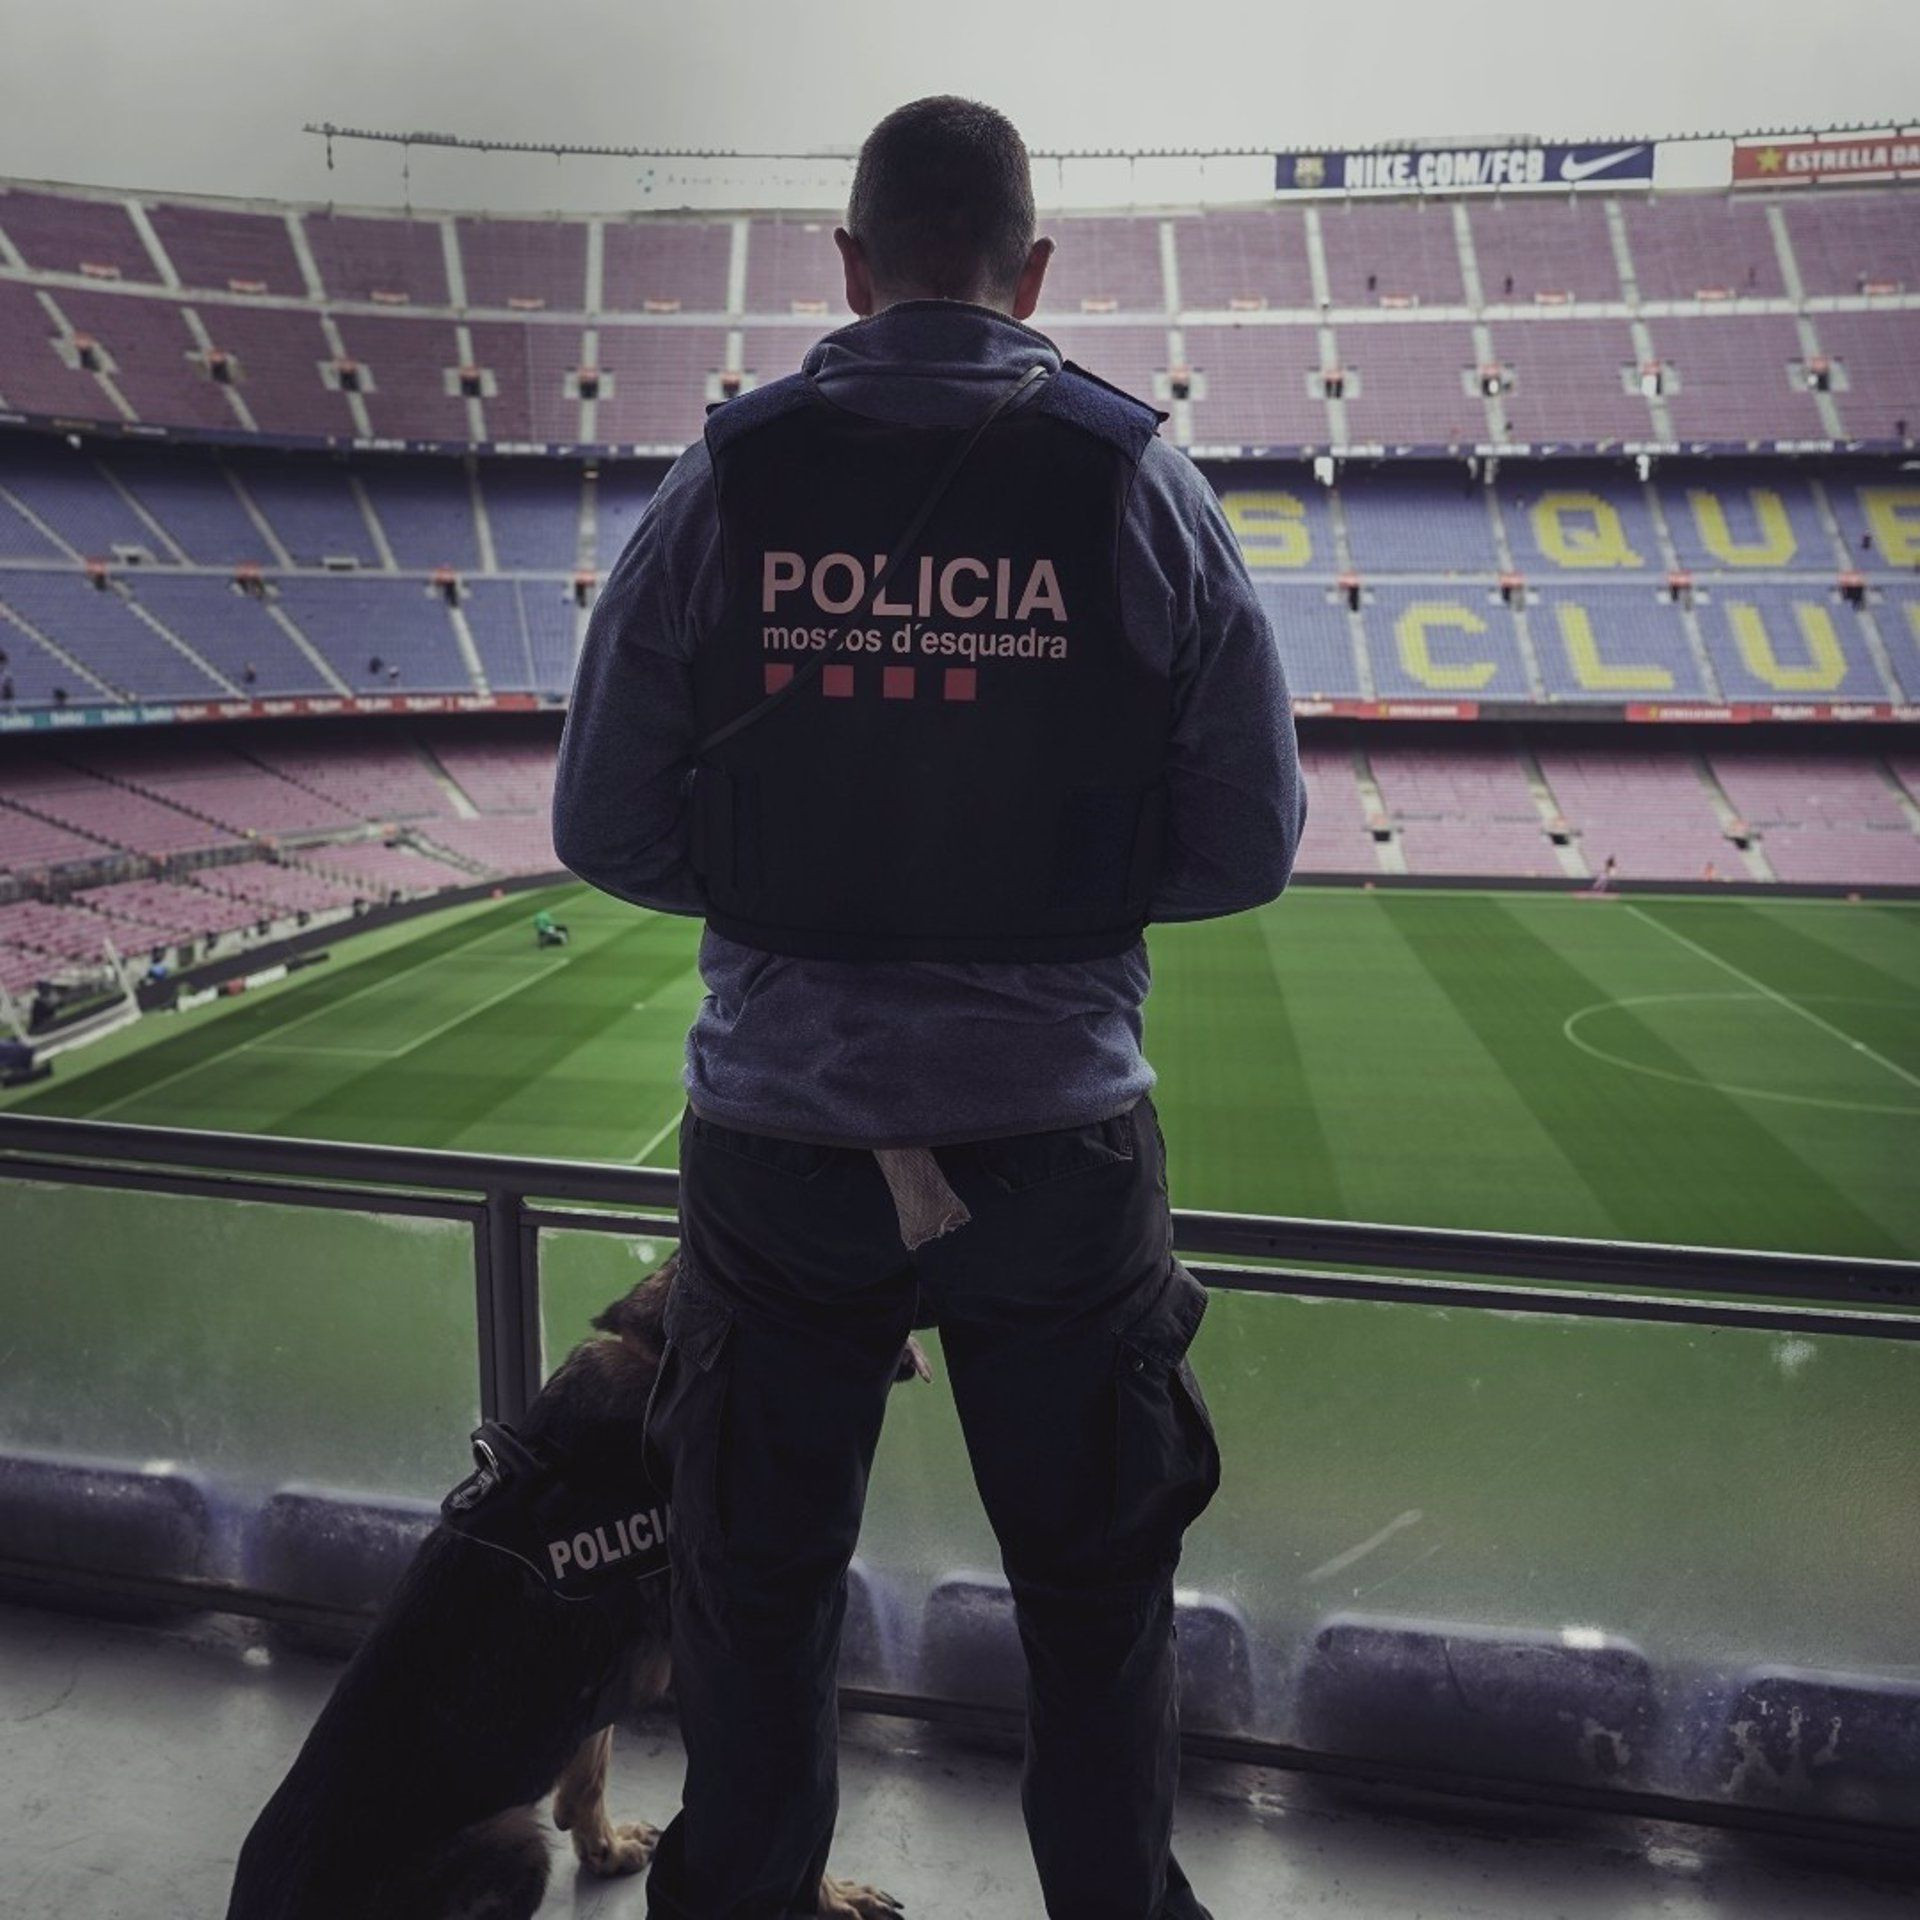 Un agente de los Mossos d'Esquadra en el Camp Nou / MOSSOS D'ESQUADRA